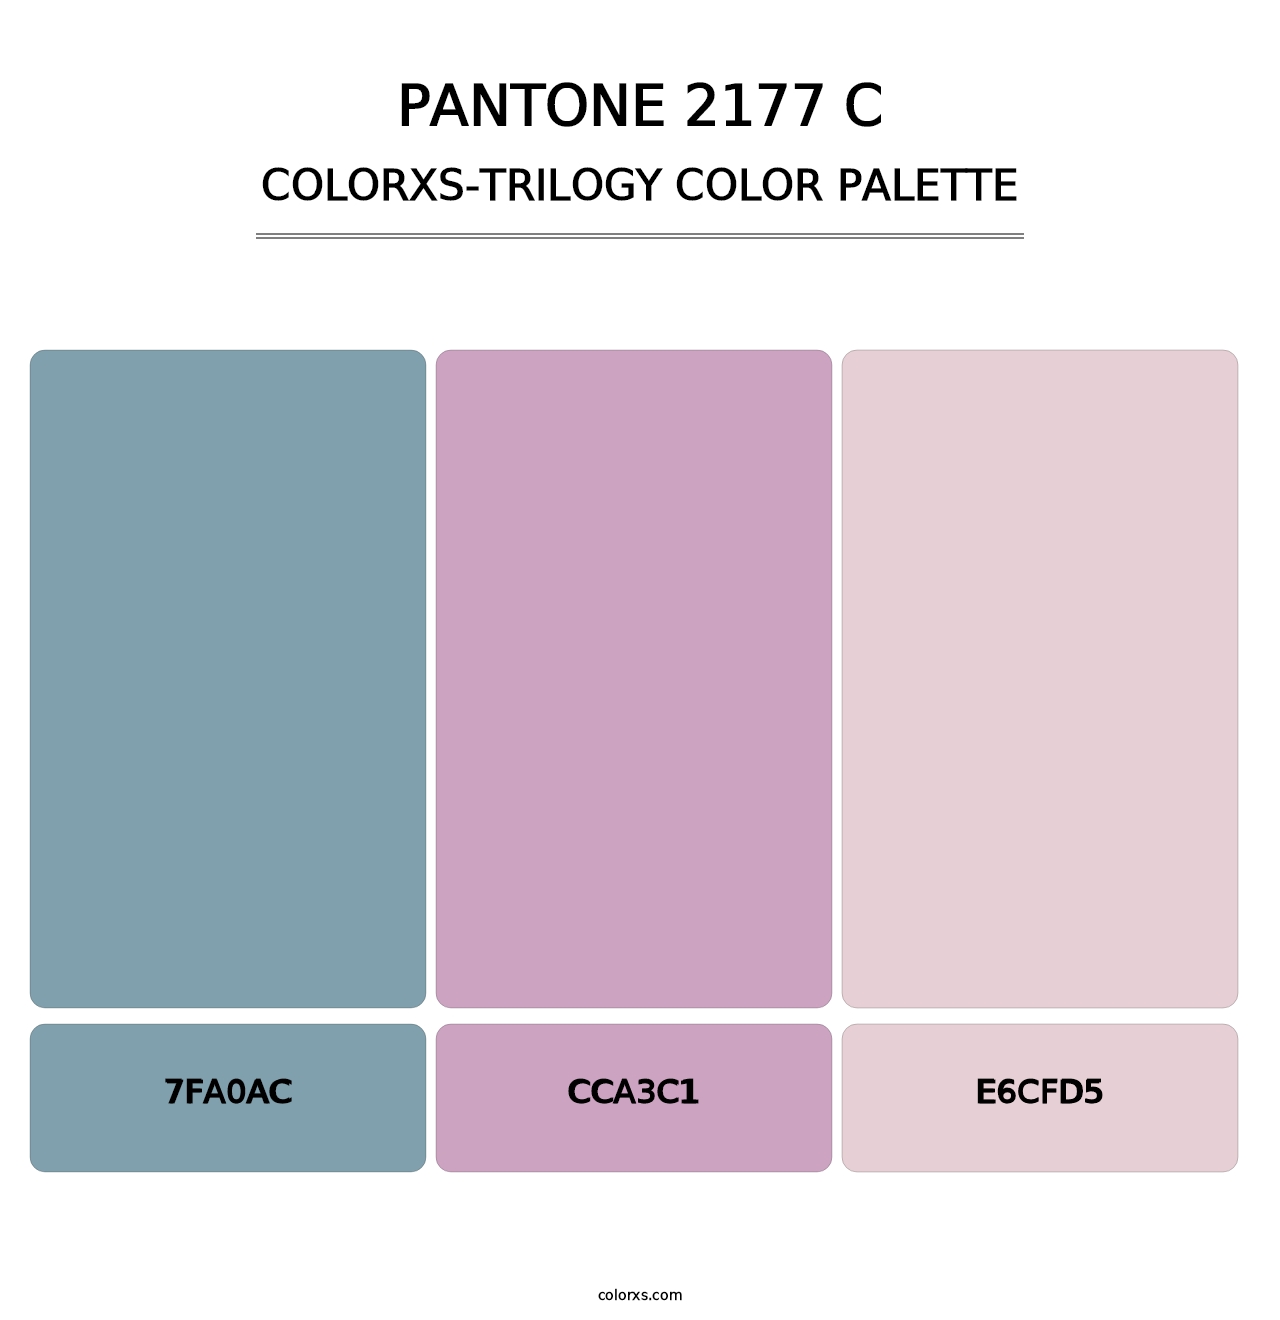 PANTONE 2177 C - Colorxs Trilogy Palette